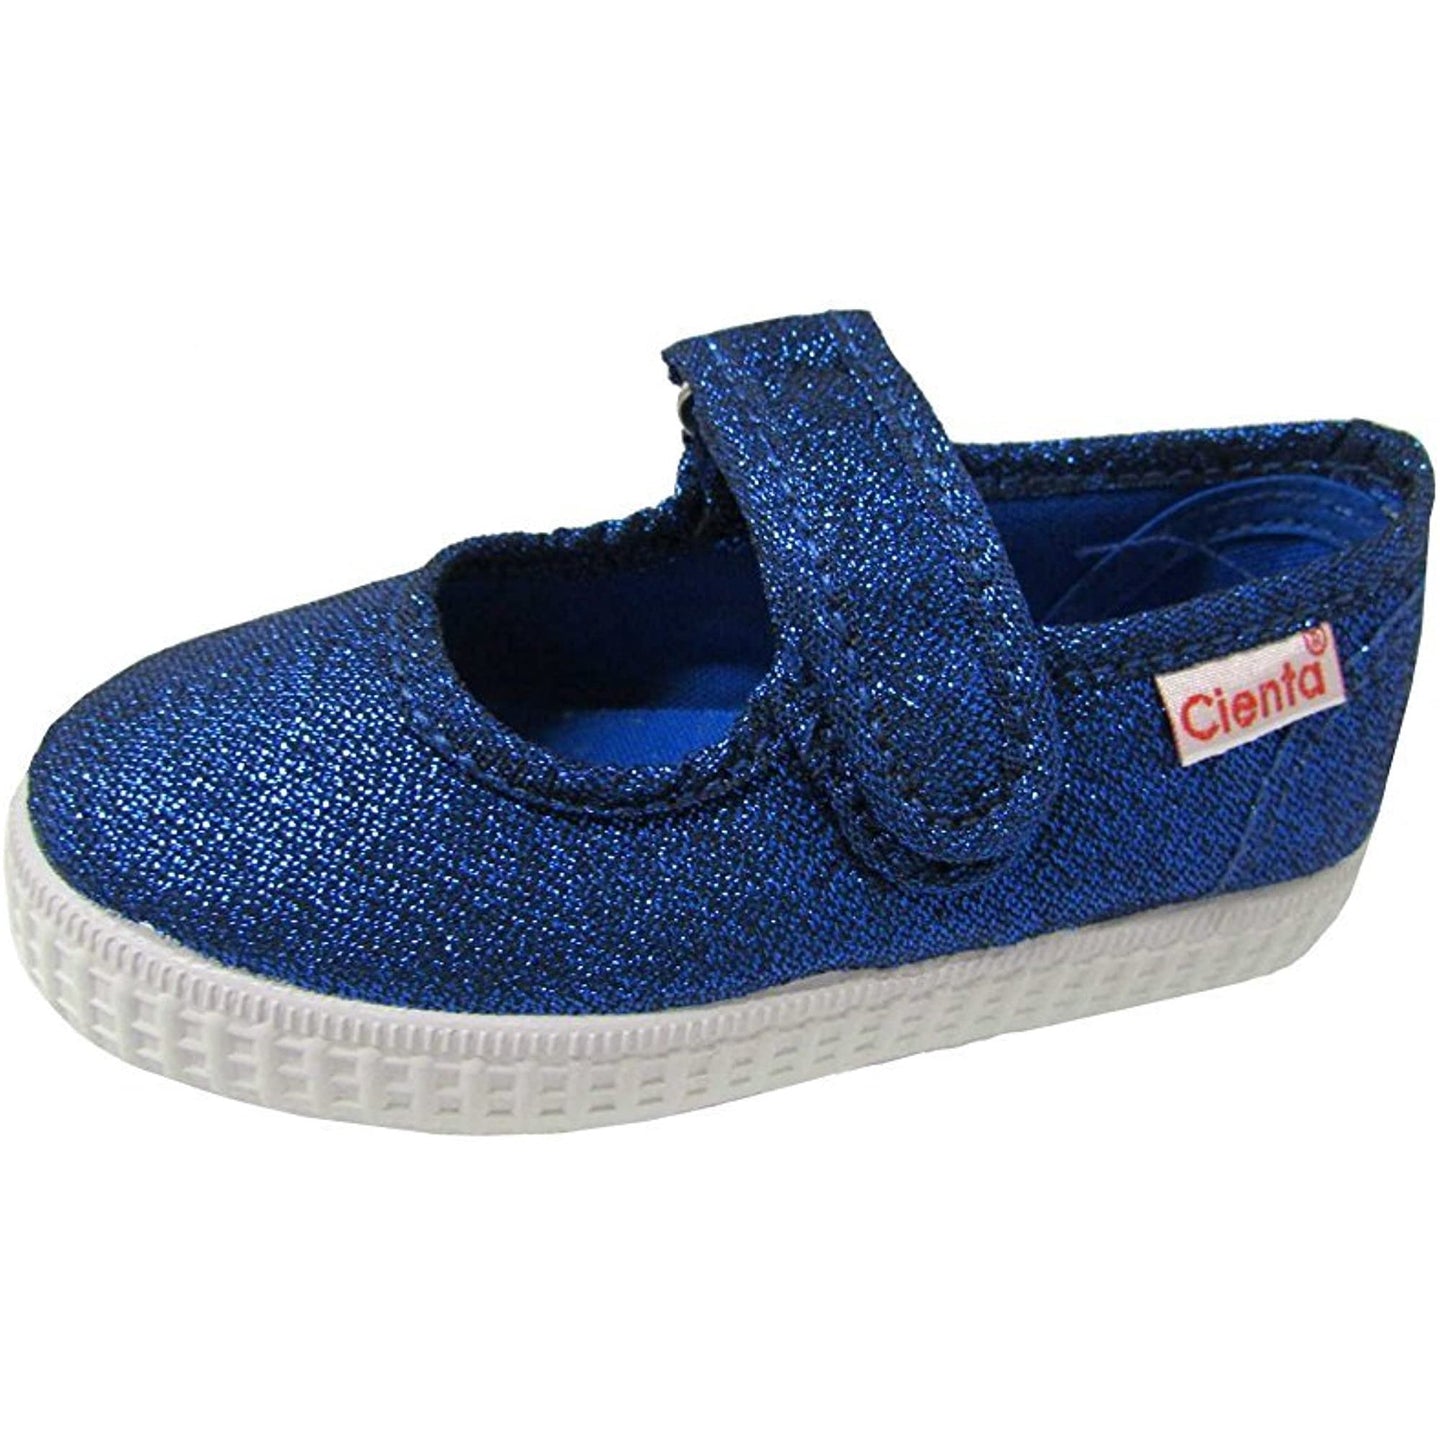 [EU22] Cienta Kids Mary Jane Shoe - Shimmer Blue NWOT